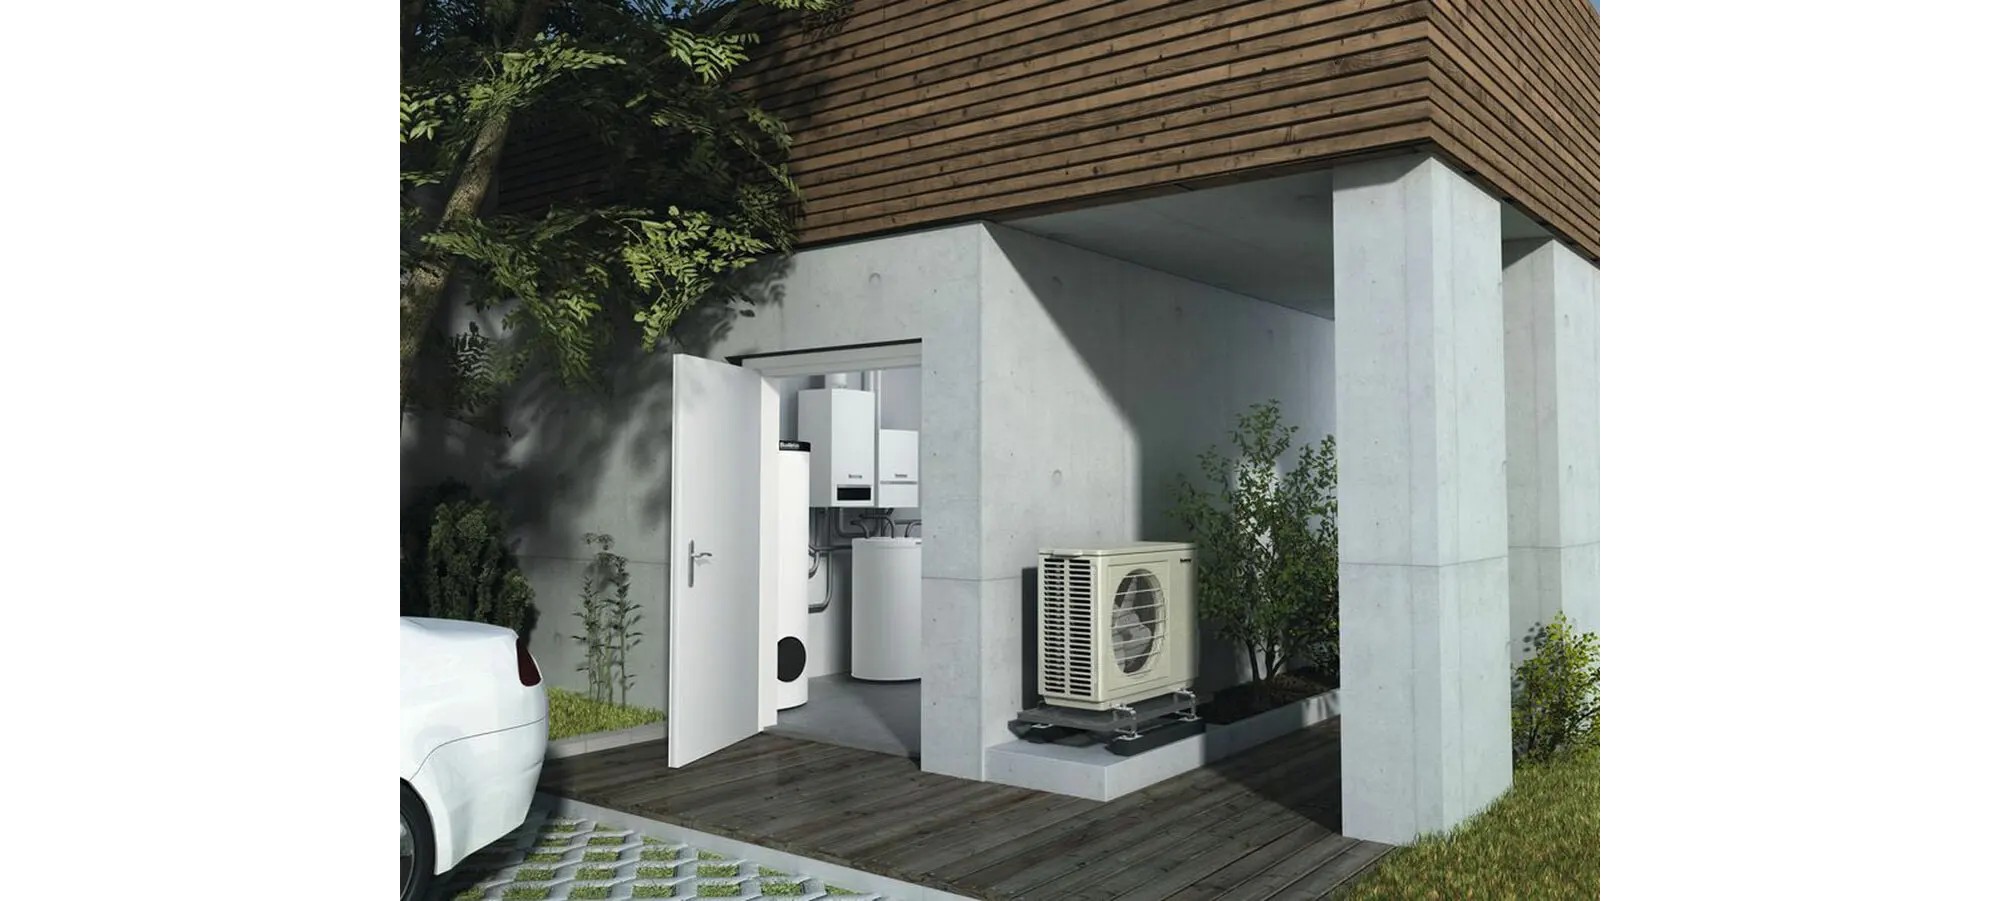 Розумний дім: як облаштувати енергоефективне опалення будинку